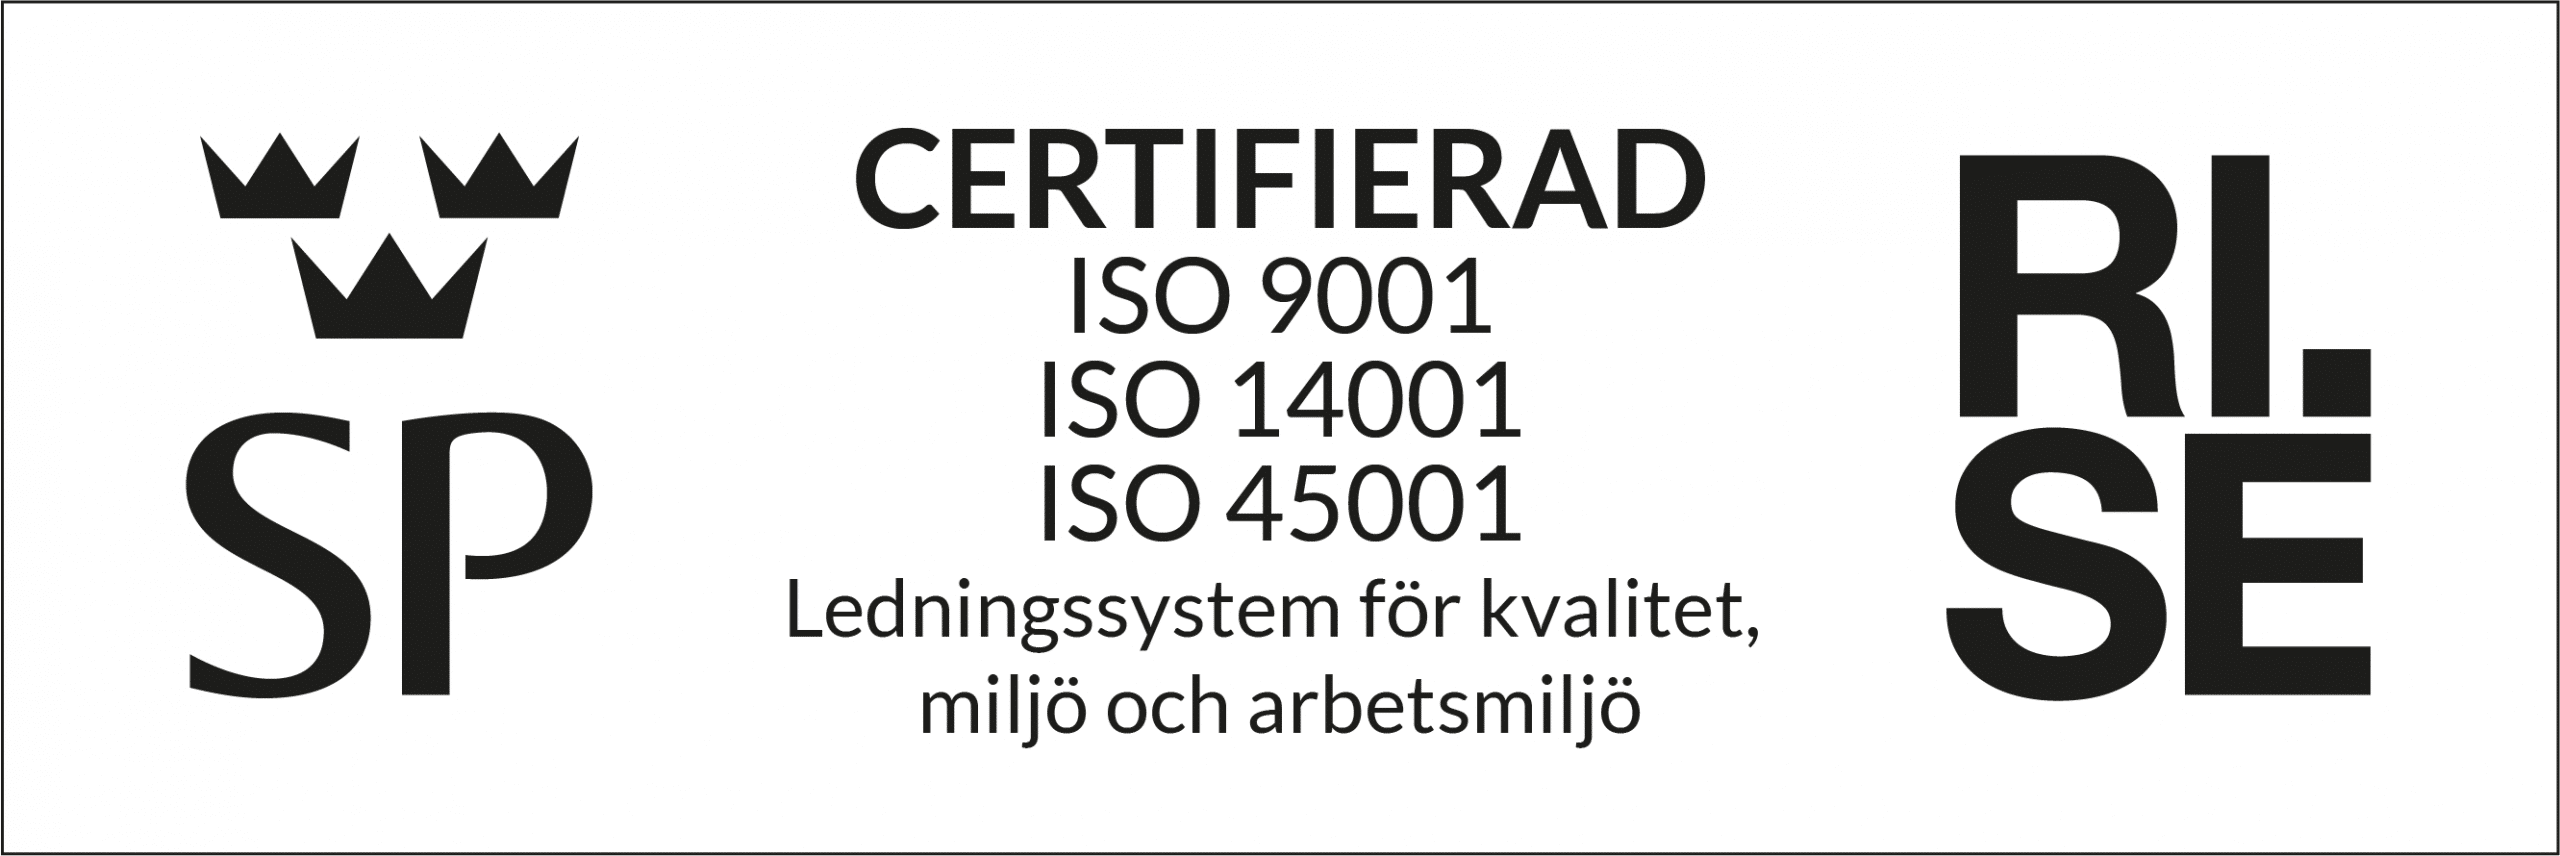 Certifierad ISO 9001, 14001 & 45001. Ledningssystem för kvalitet, miljö & arbetsmiljö 